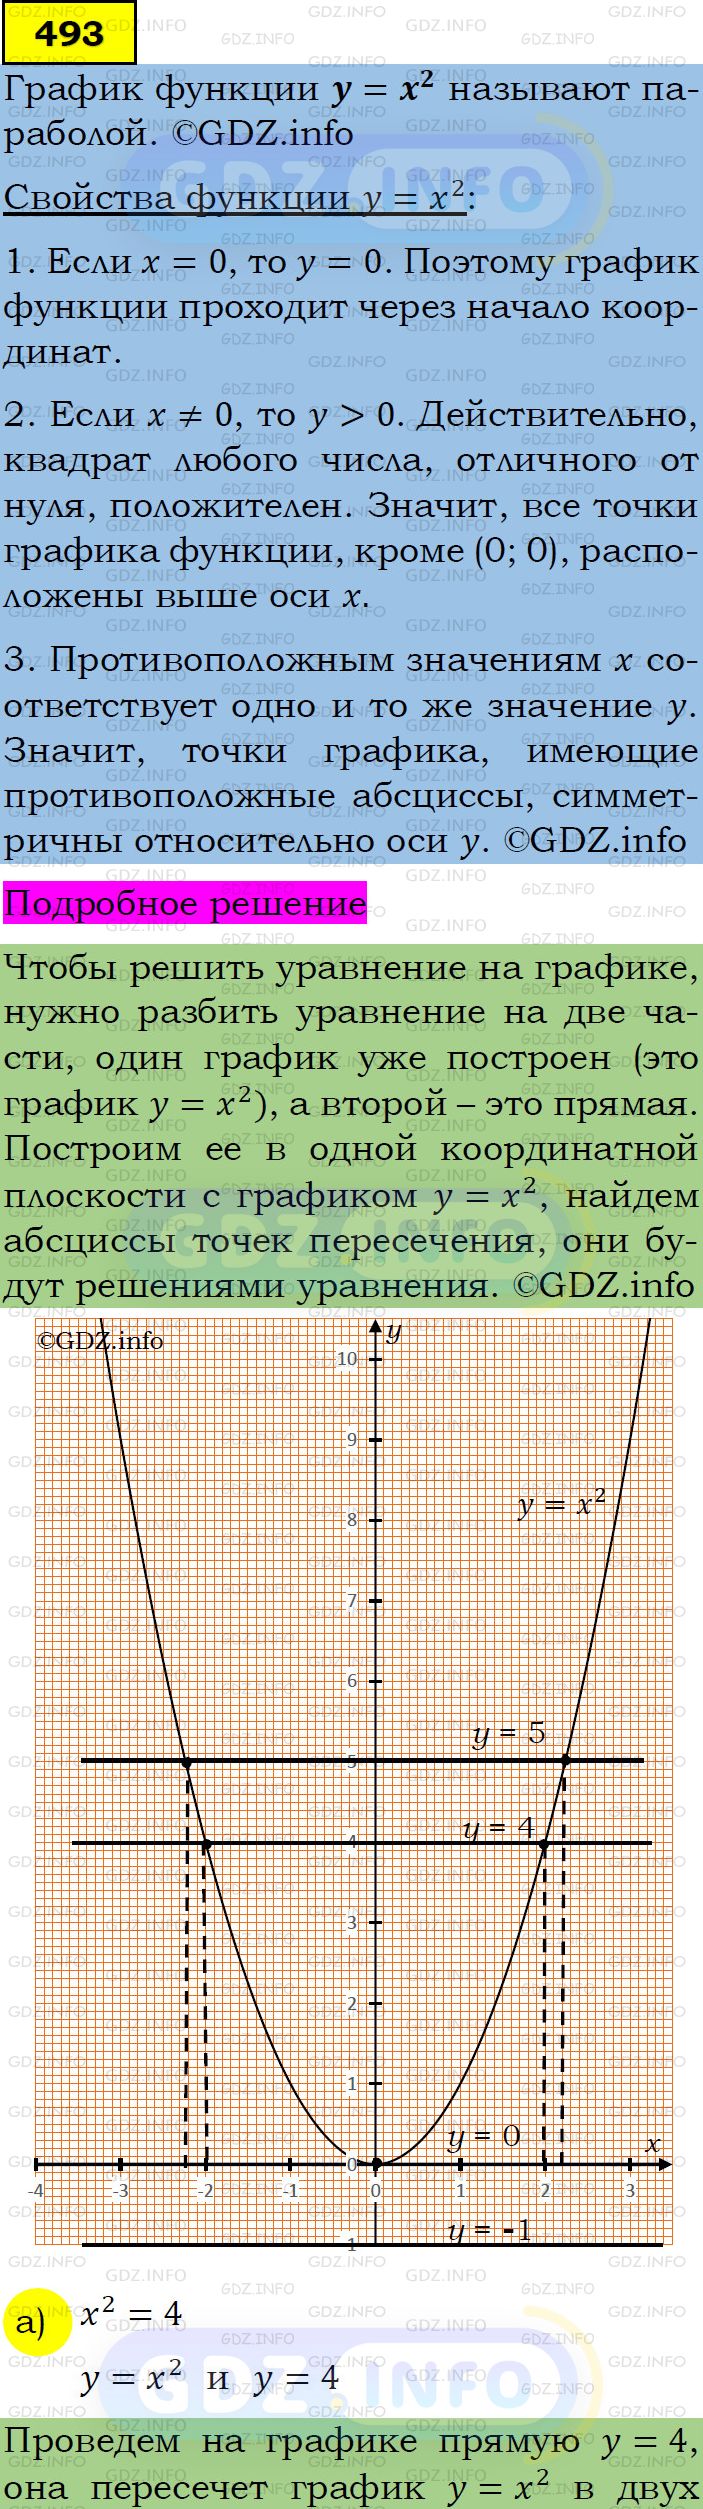 Фото подробного решения: Номер задания №493 из ГДЗ по Алгебре 7 класс: Макарычев Ю.Н.